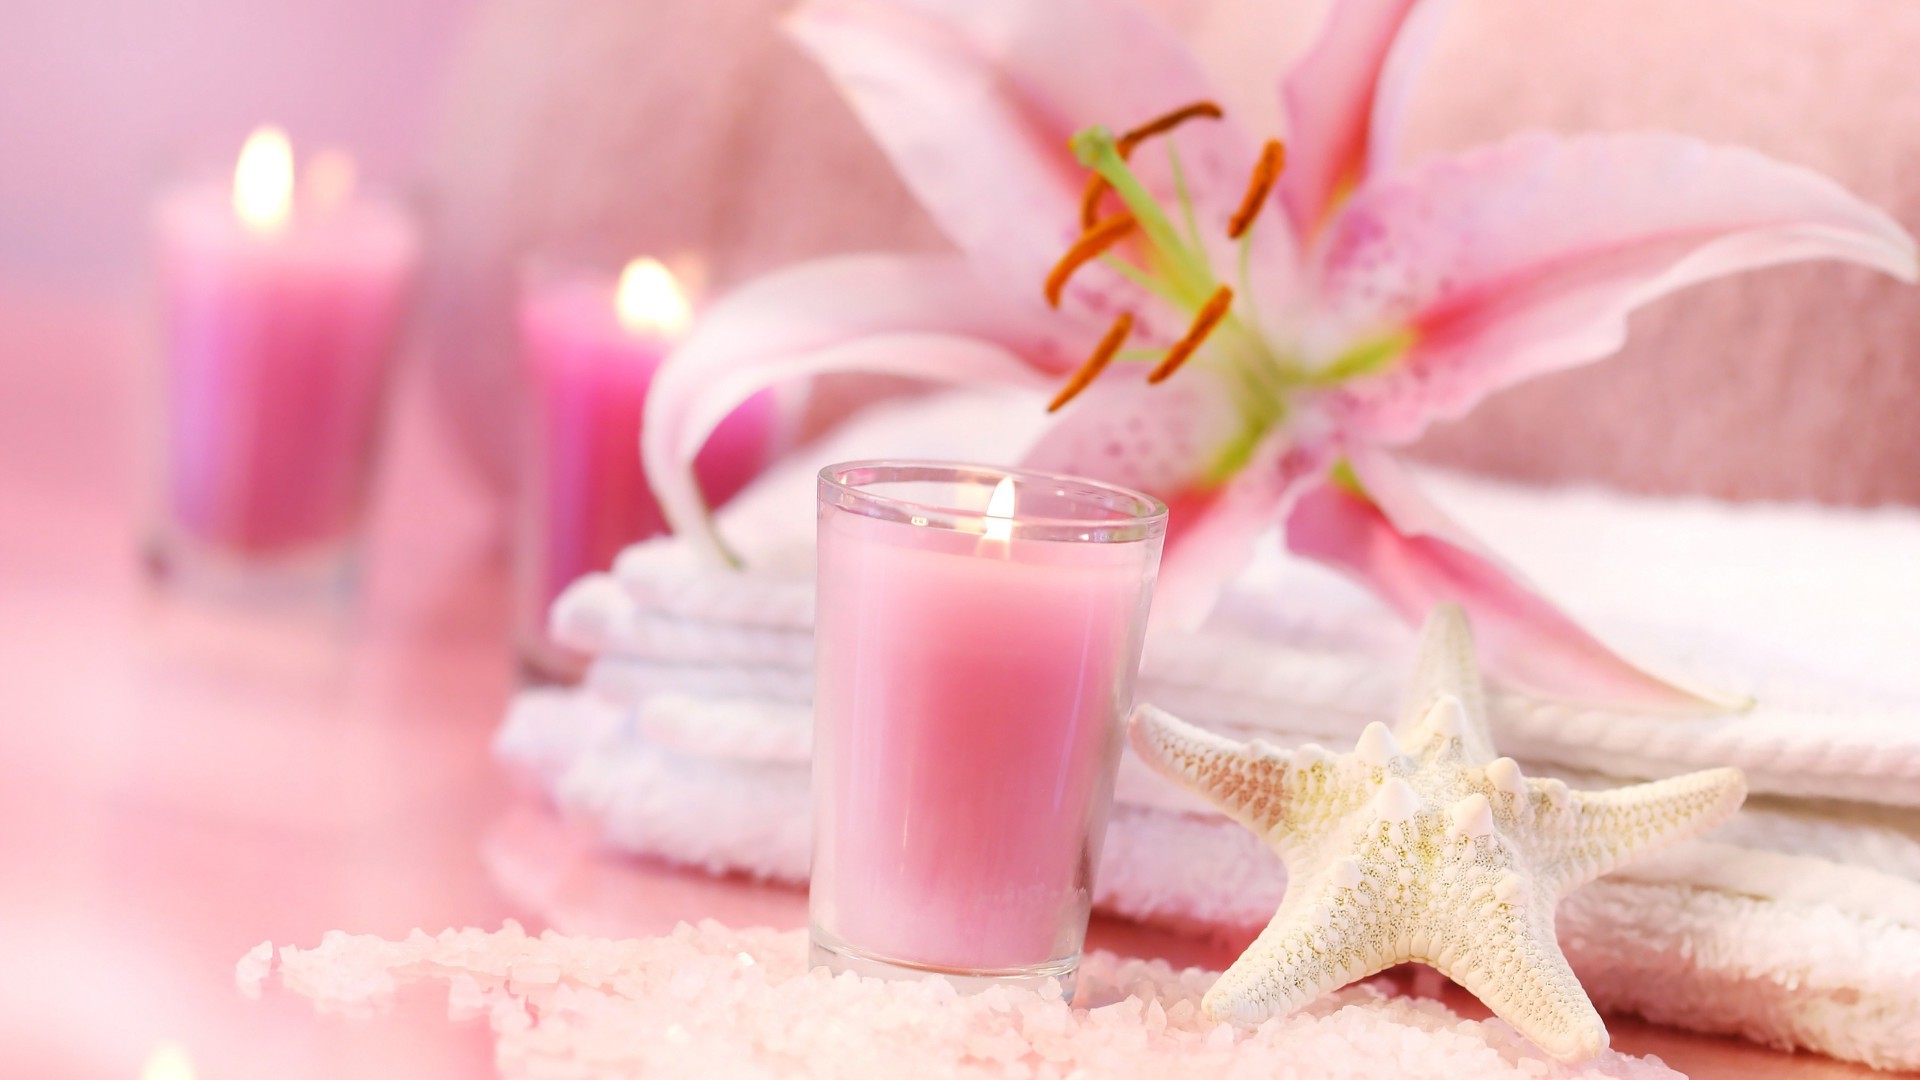 предметы интерьера релаксация лечение цветок ароматерапия свеча роскошные здоровья стекло романтика ванна природа